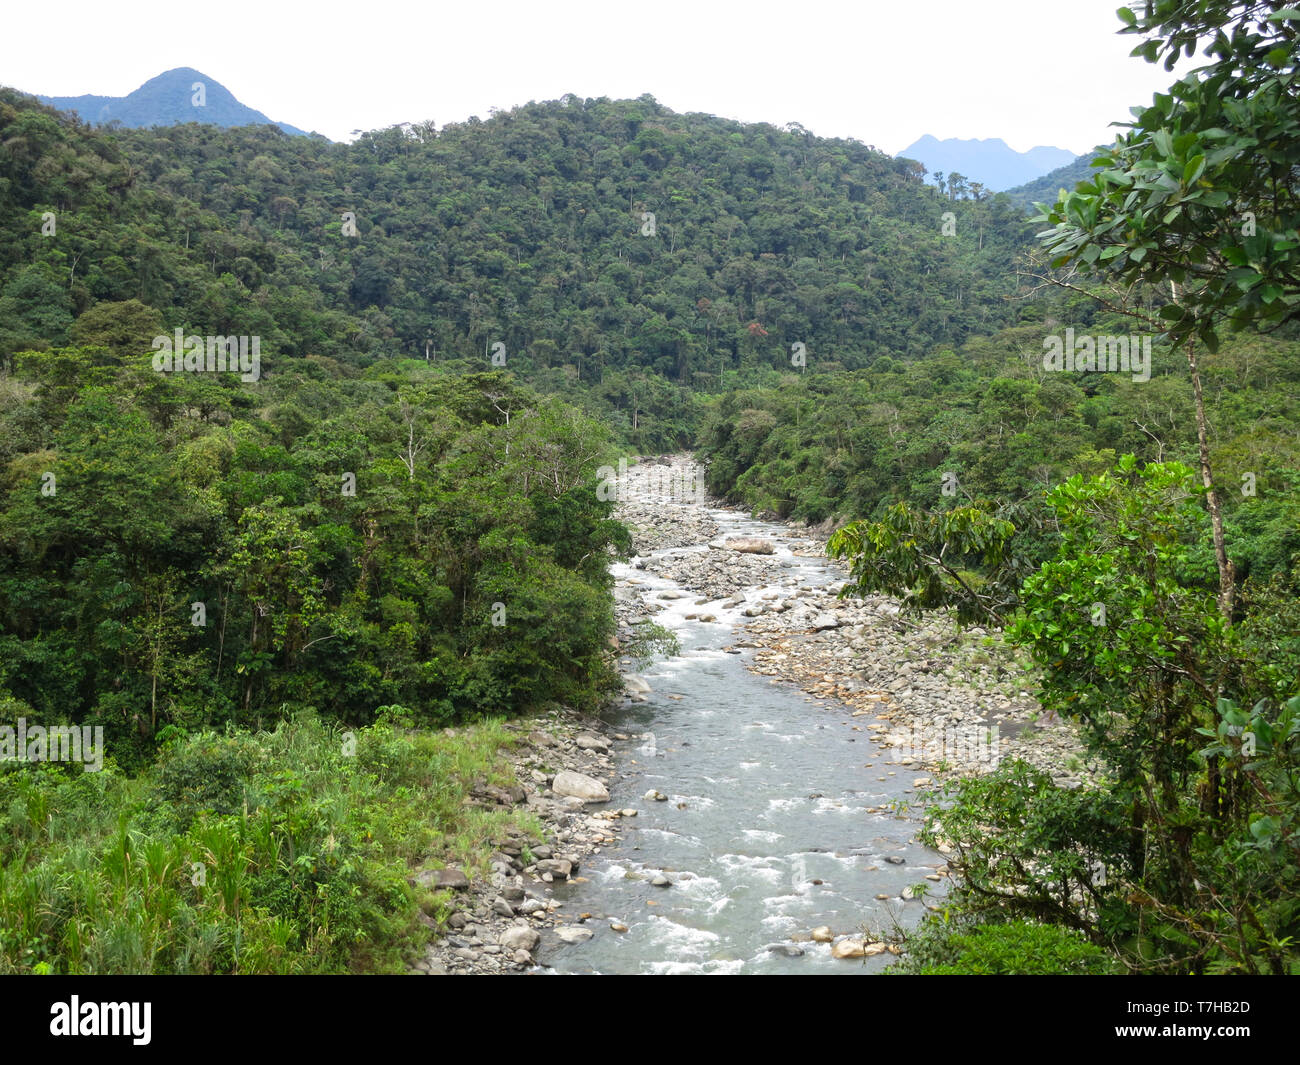 Rivière qui coule avec des pierres dans la partie inférieure de la route de Manu sur côté est la pente de la Cordillère des Andes au Pérou. Pentes boisées de part et d'autre. Banque D'Images